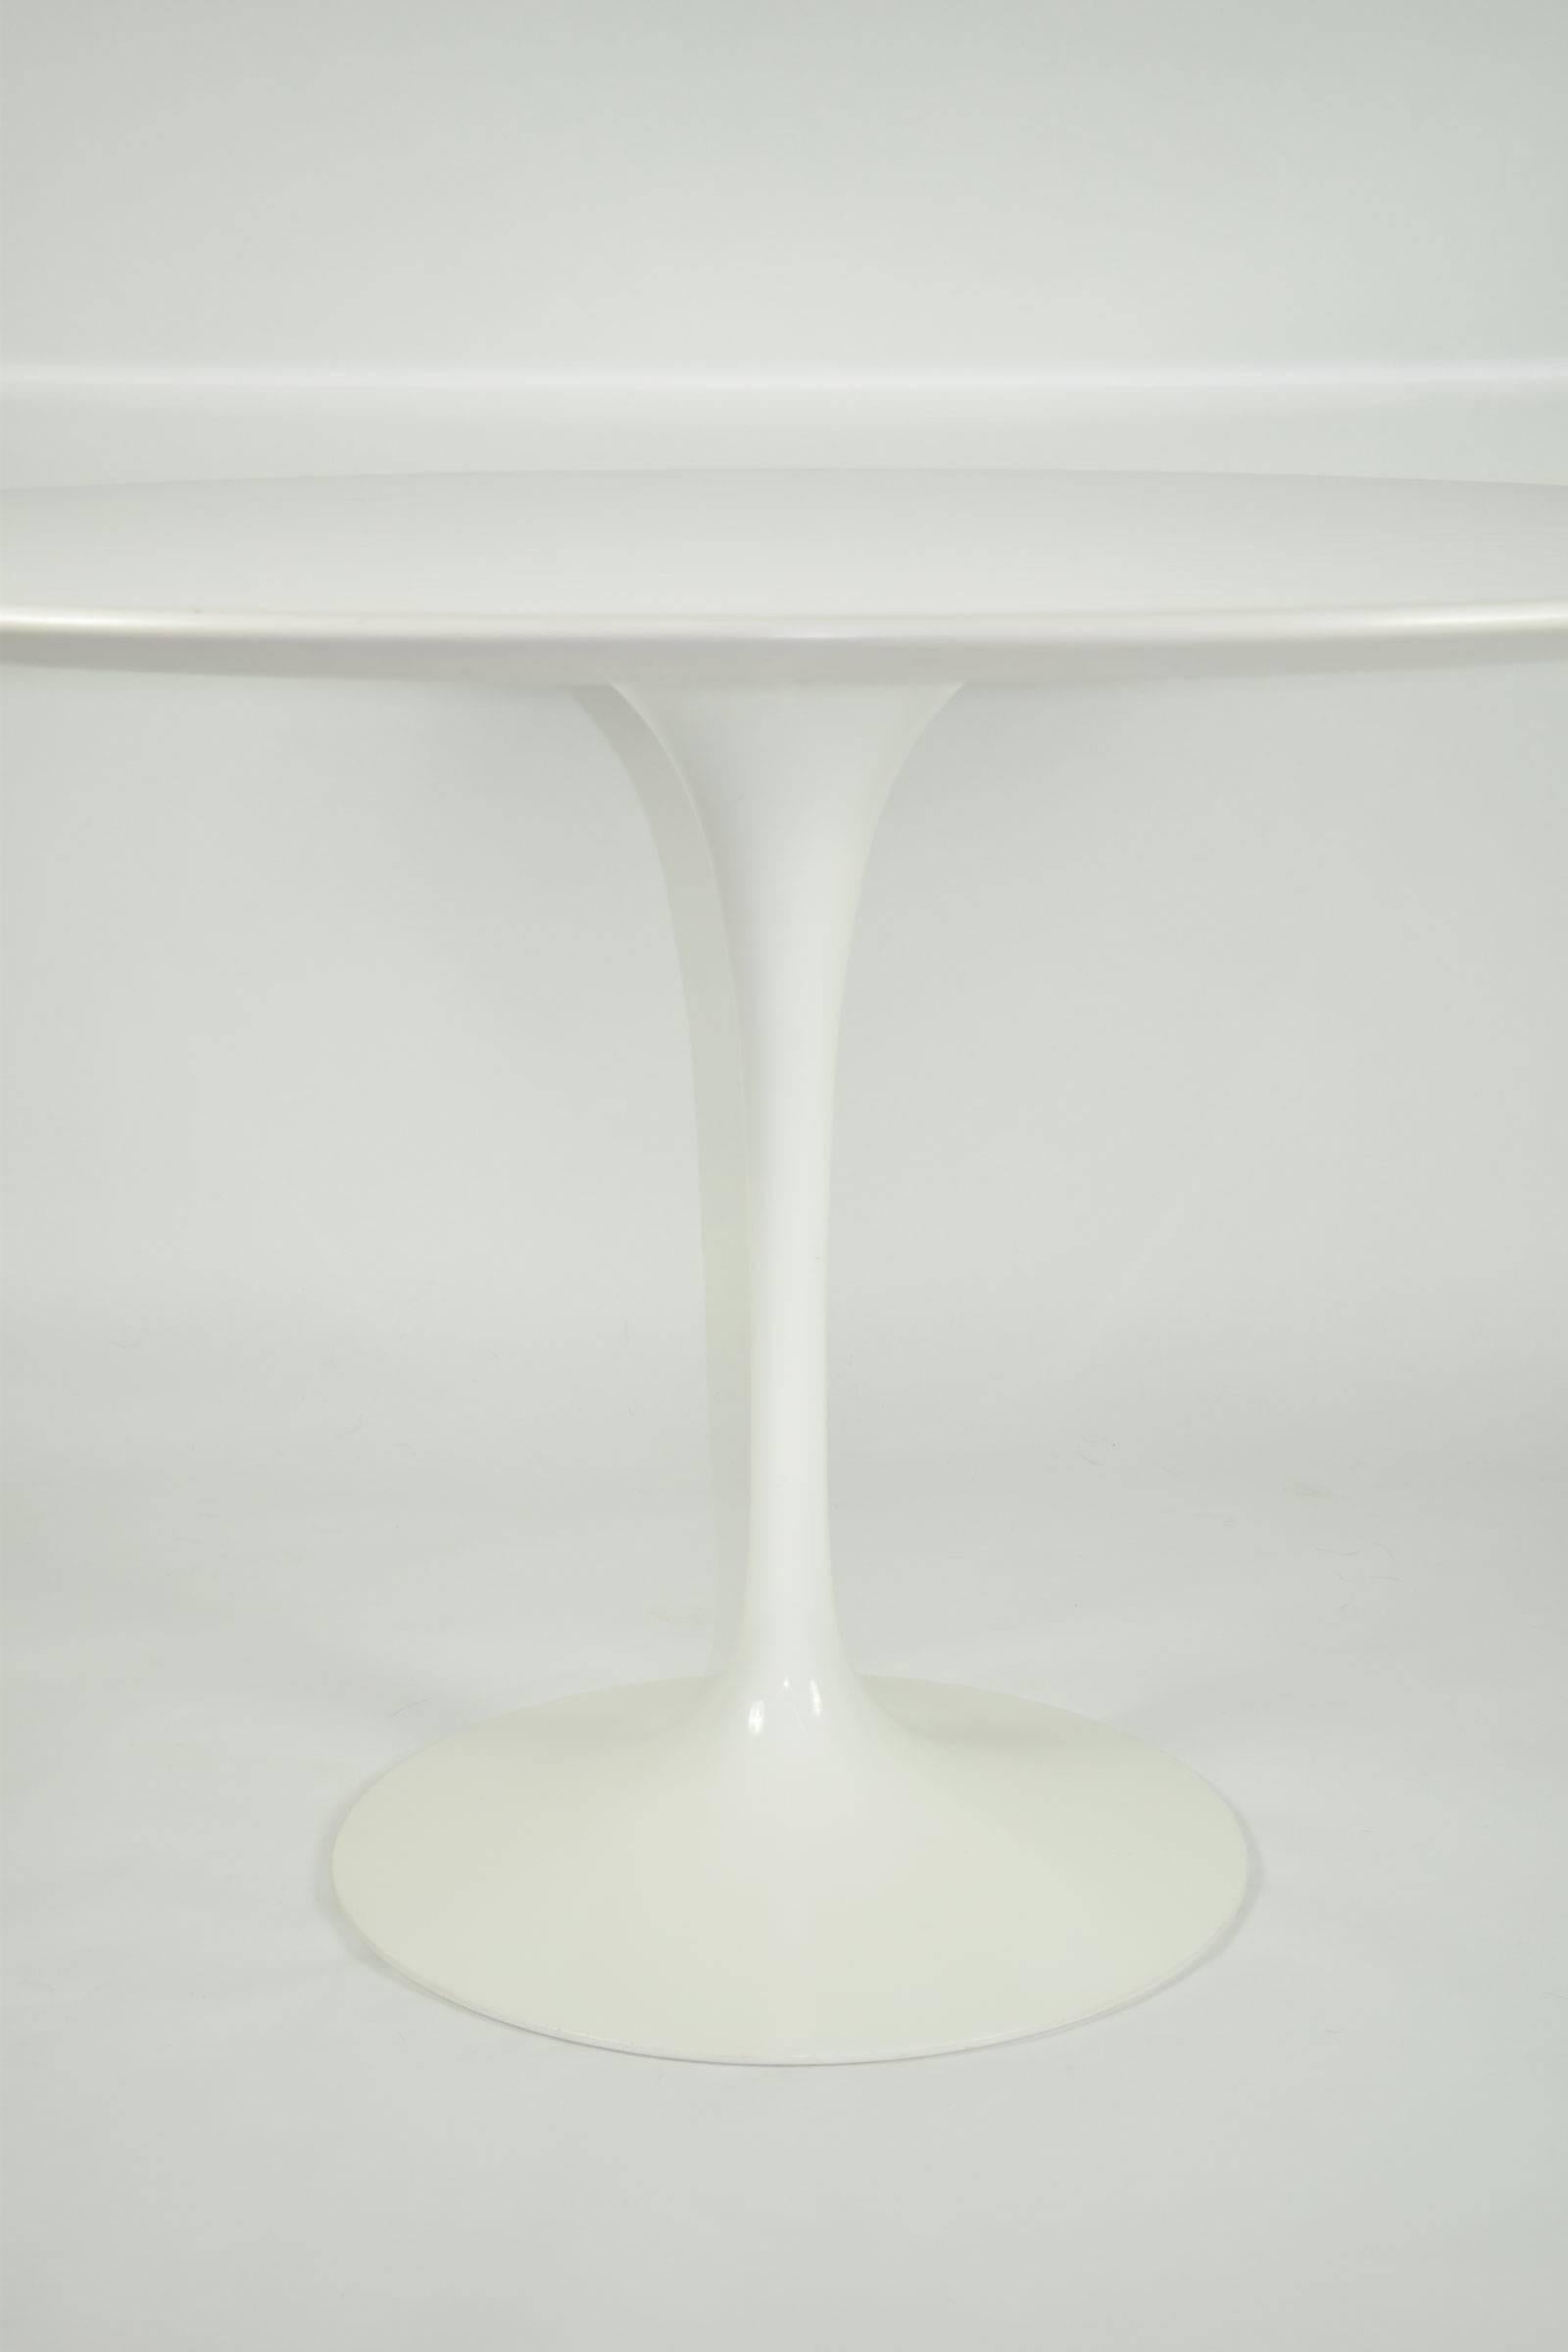 Mid-Century Modern Eero Saarinen for Knoll Tulip Table